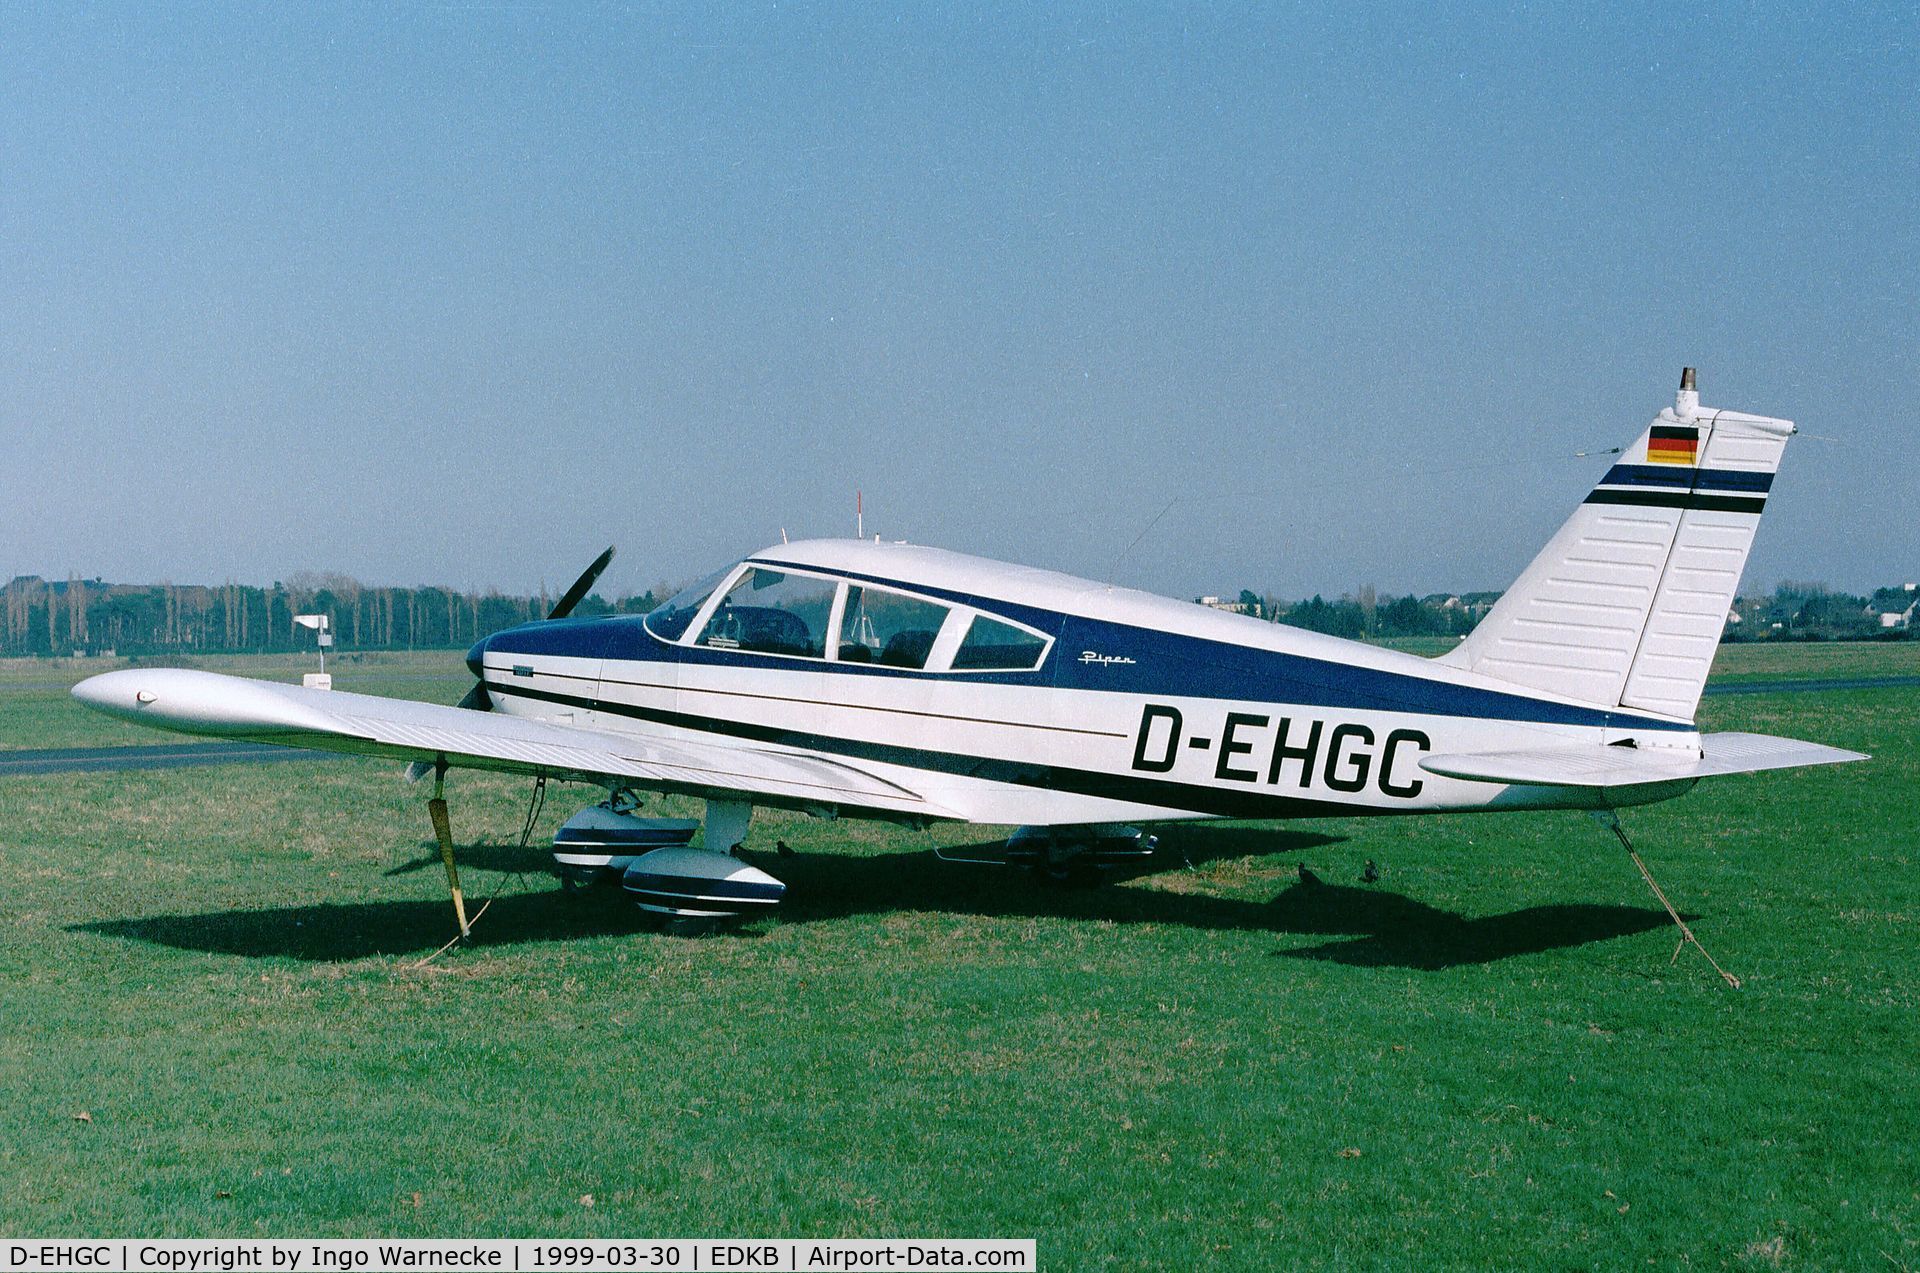 D-EHGC, 1970 Piper PA-28-180 C/N 28-5727, Piper PA-28-180 Cherokee E at Bonn-Hangelar airfield